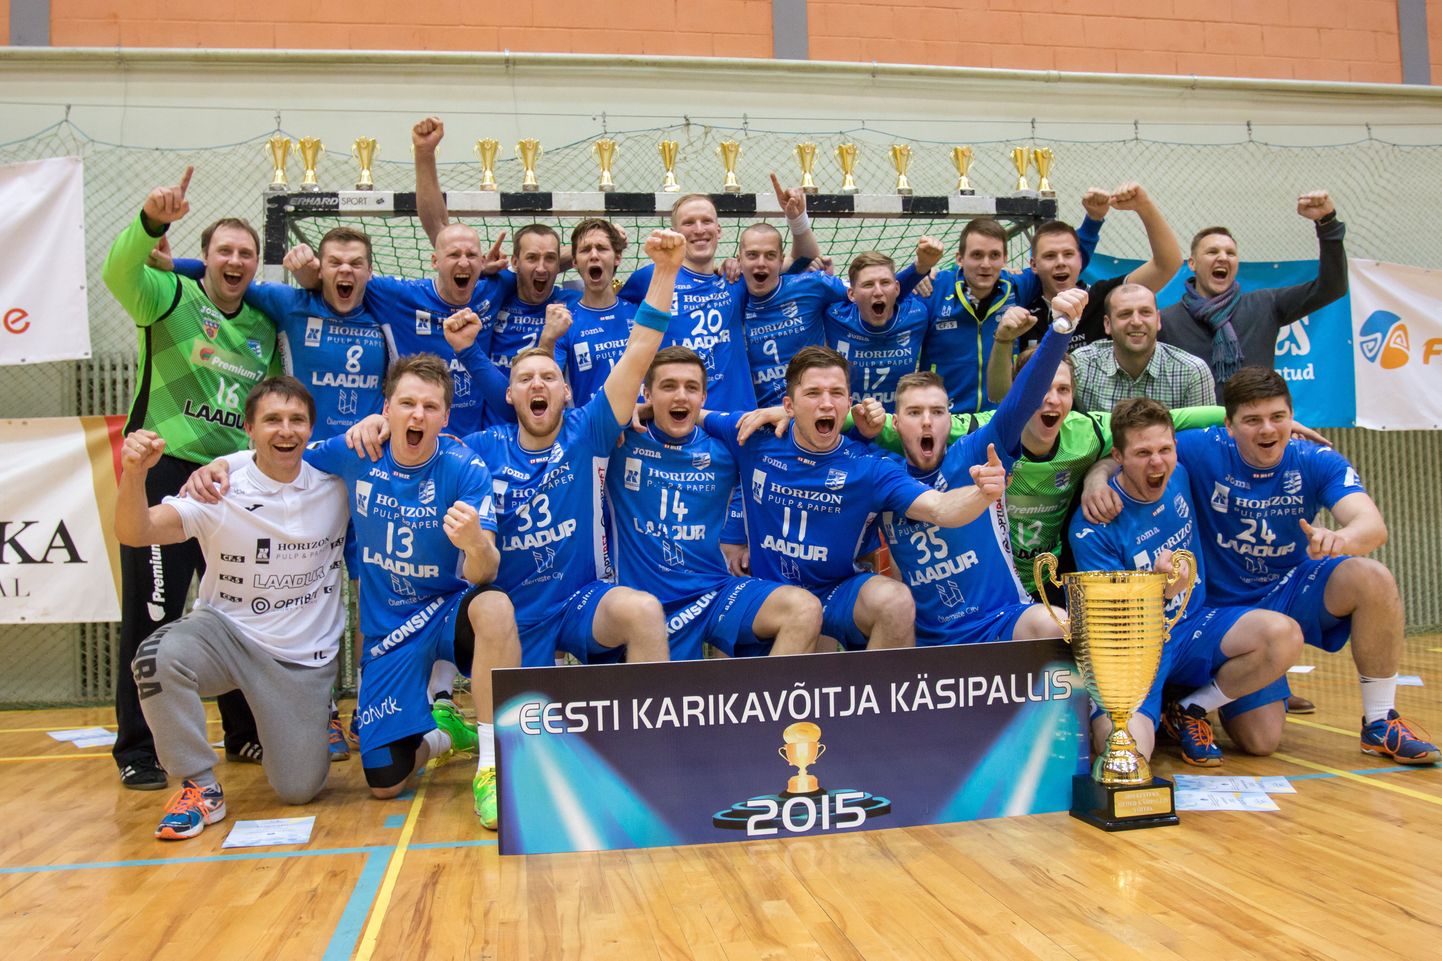 Eesti karikavõitja 2015 - Kehra meeskond.